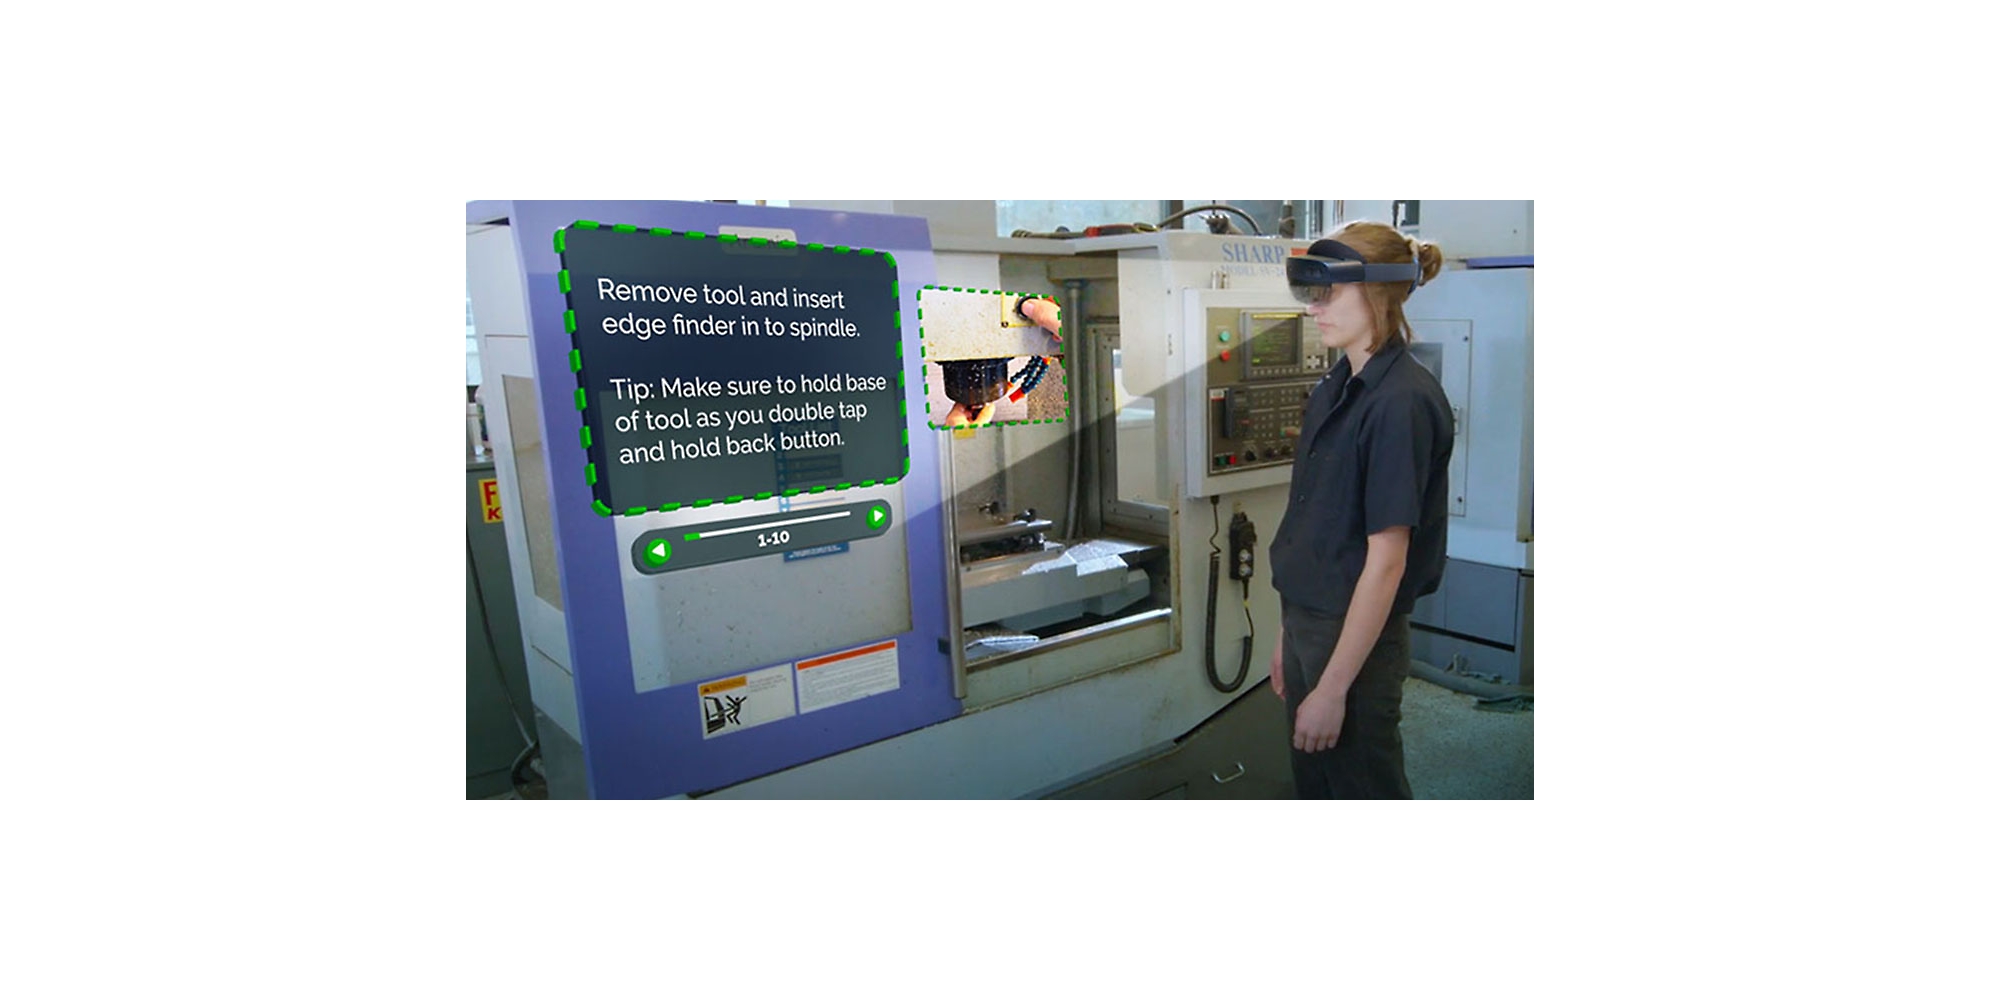 Una persona con HoloLens 2 viendo un vídeo en el que se describe cómo llevar a cabo una tarea específica con instrucciones complementarias en realidad mixta.